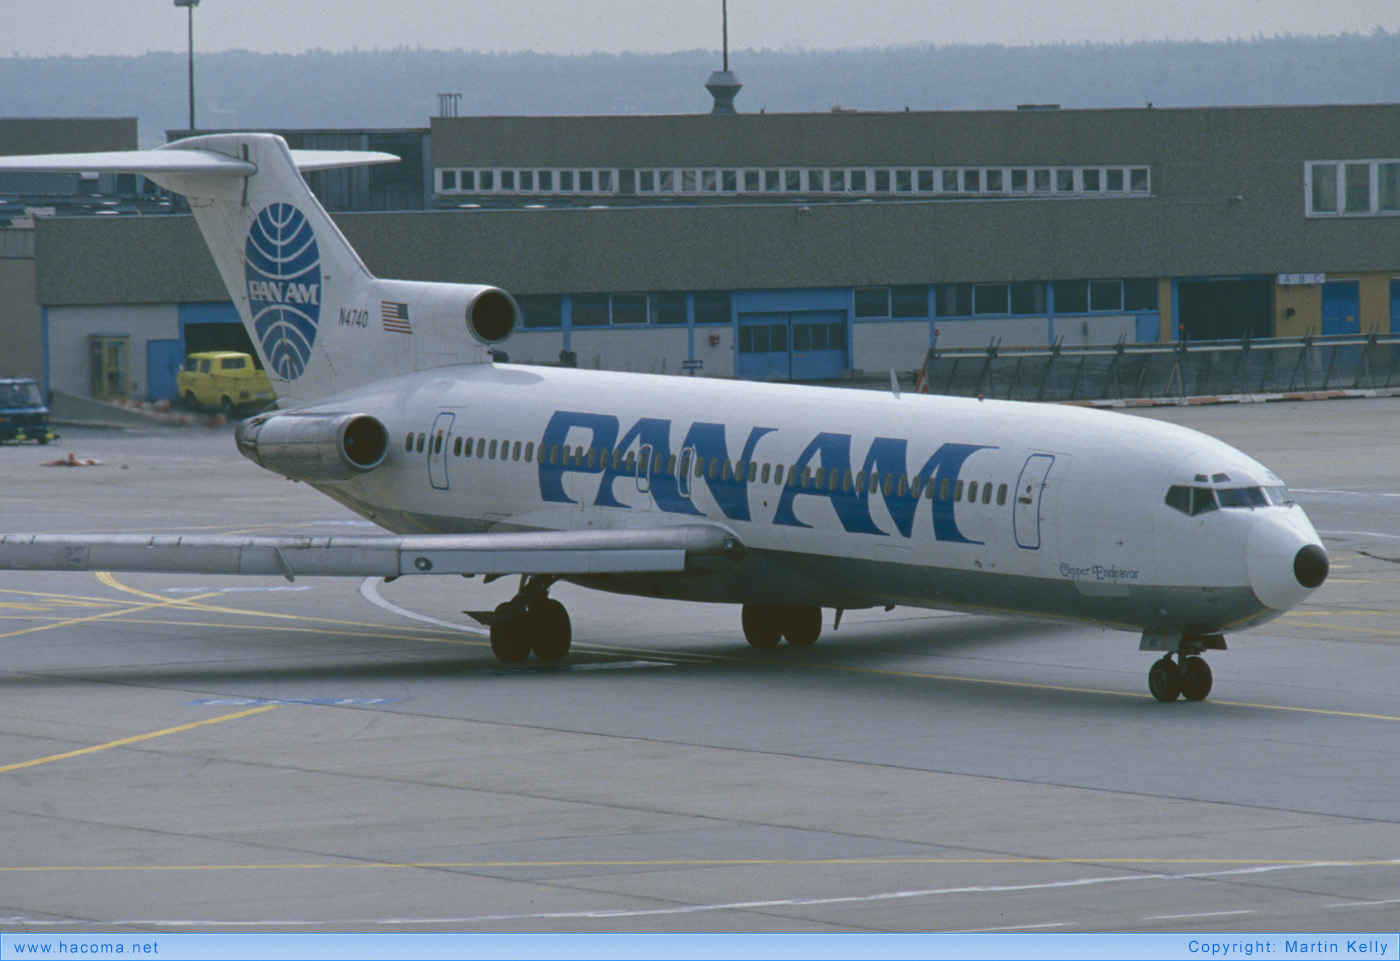 Foto von N4740 - Pan Am Clipper Endeavor - Flughafen Frankfurt am Main - 10.07.1989